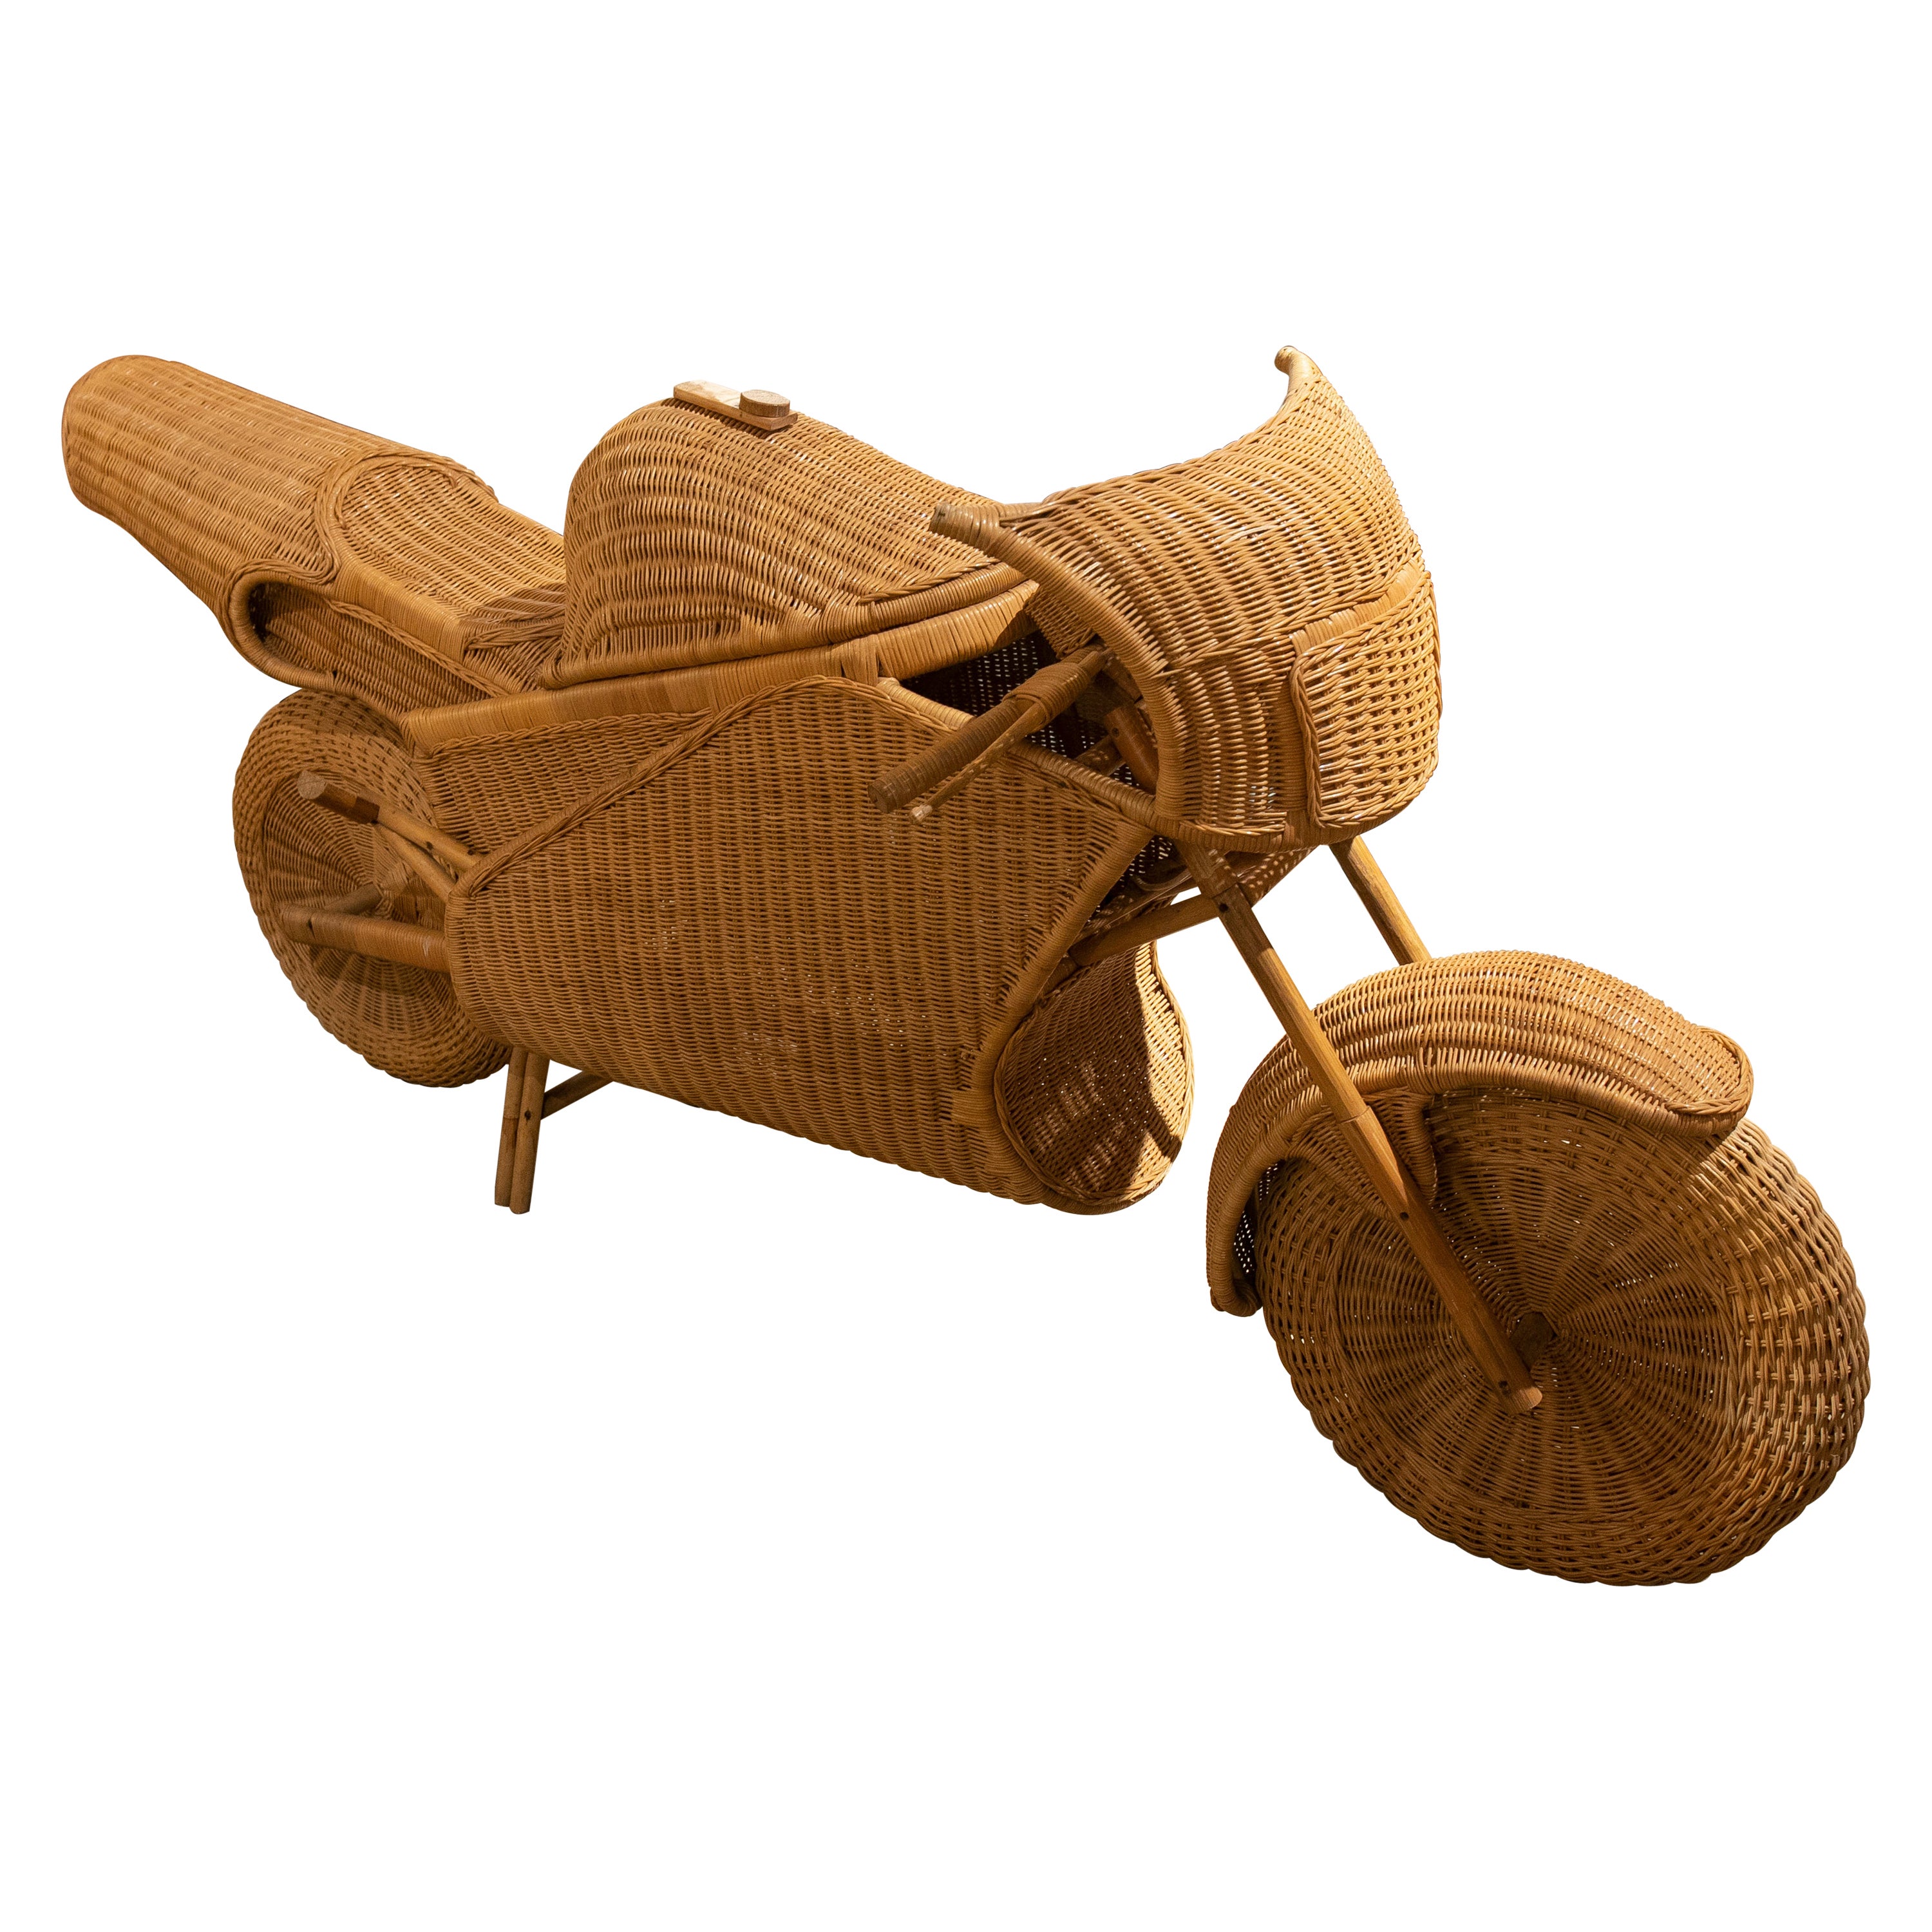 Motocyclette de course en osier et bambou faite à la main des années 1970